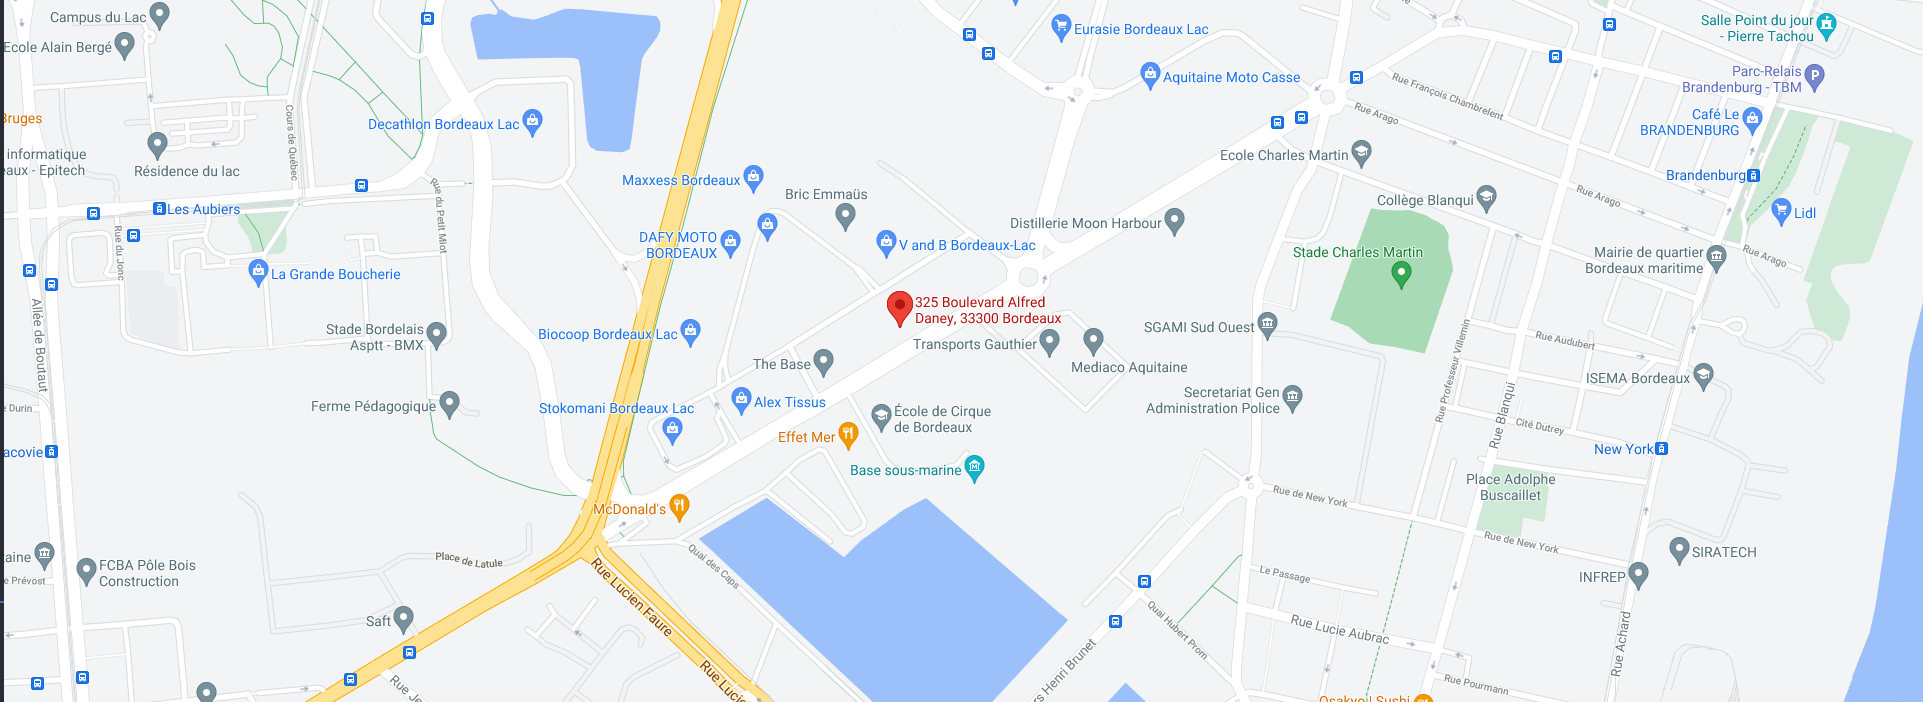 Cartographie Google Maps - Contrôles Techniques Artigues - 20 Avenue de l'Île de France, 33370 Bordeaux